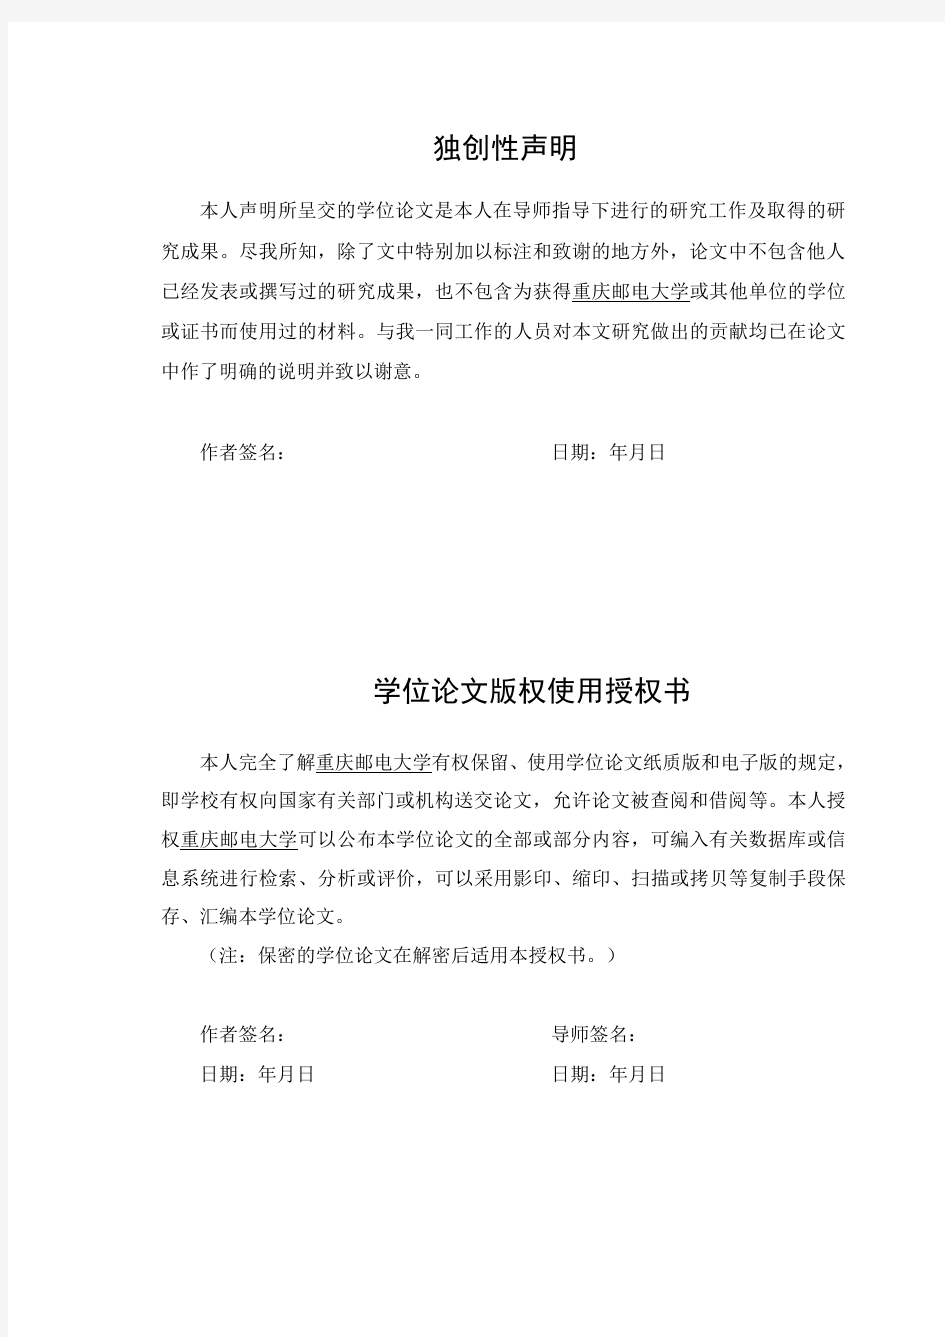 重庆邮电大学硕士研究生学位论文写作标准2015V1.1